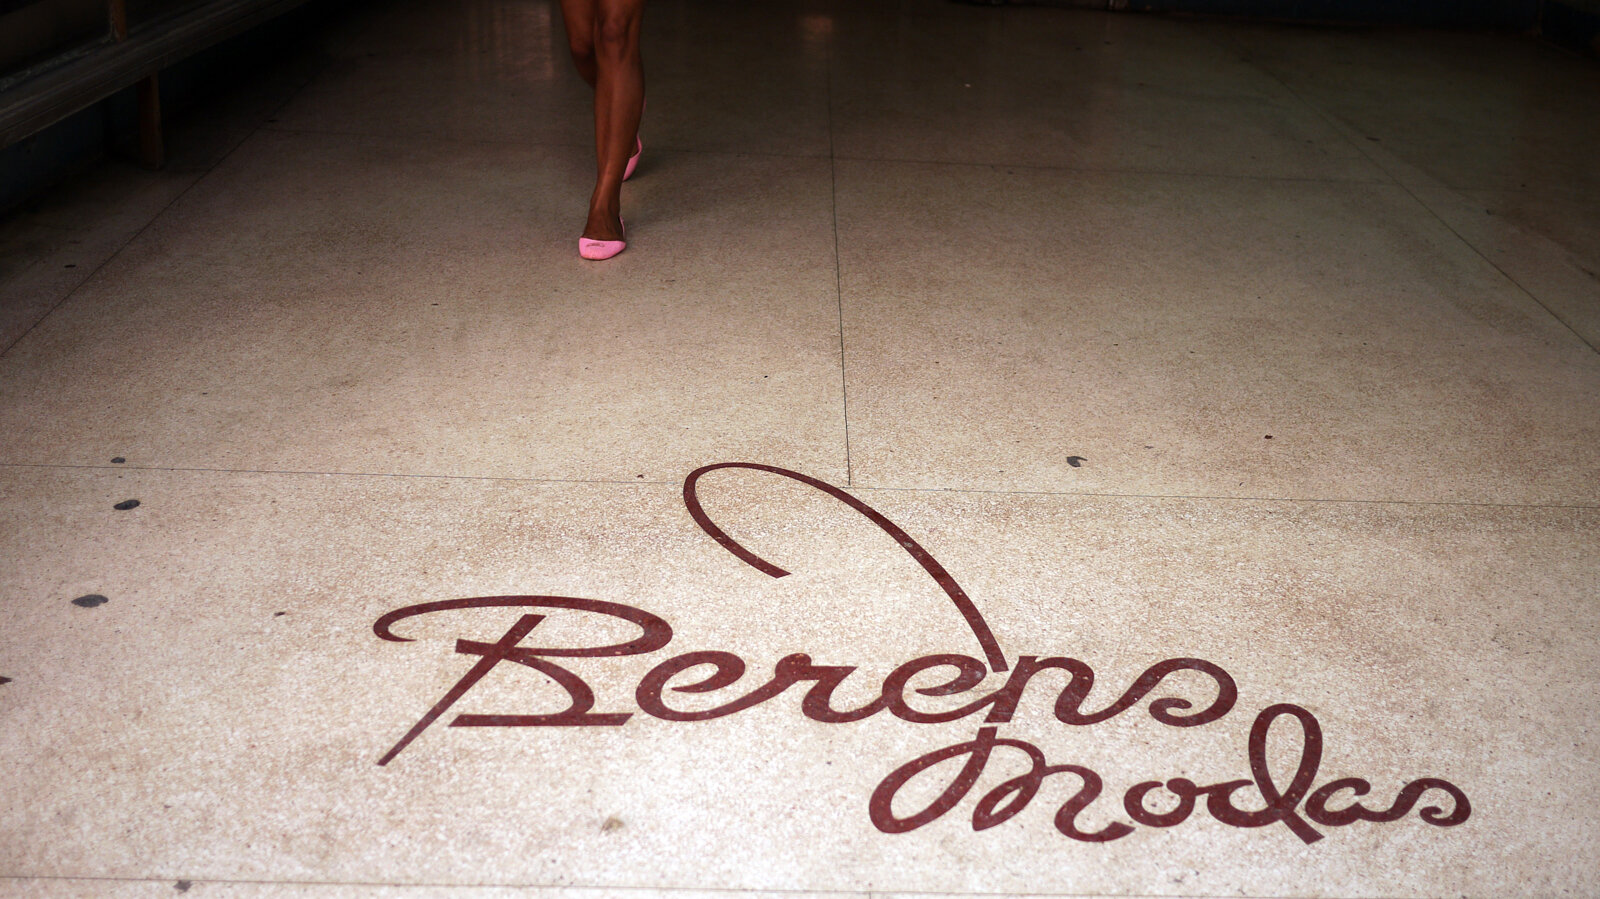 Burens Modes with Legs,  Havana, 2004